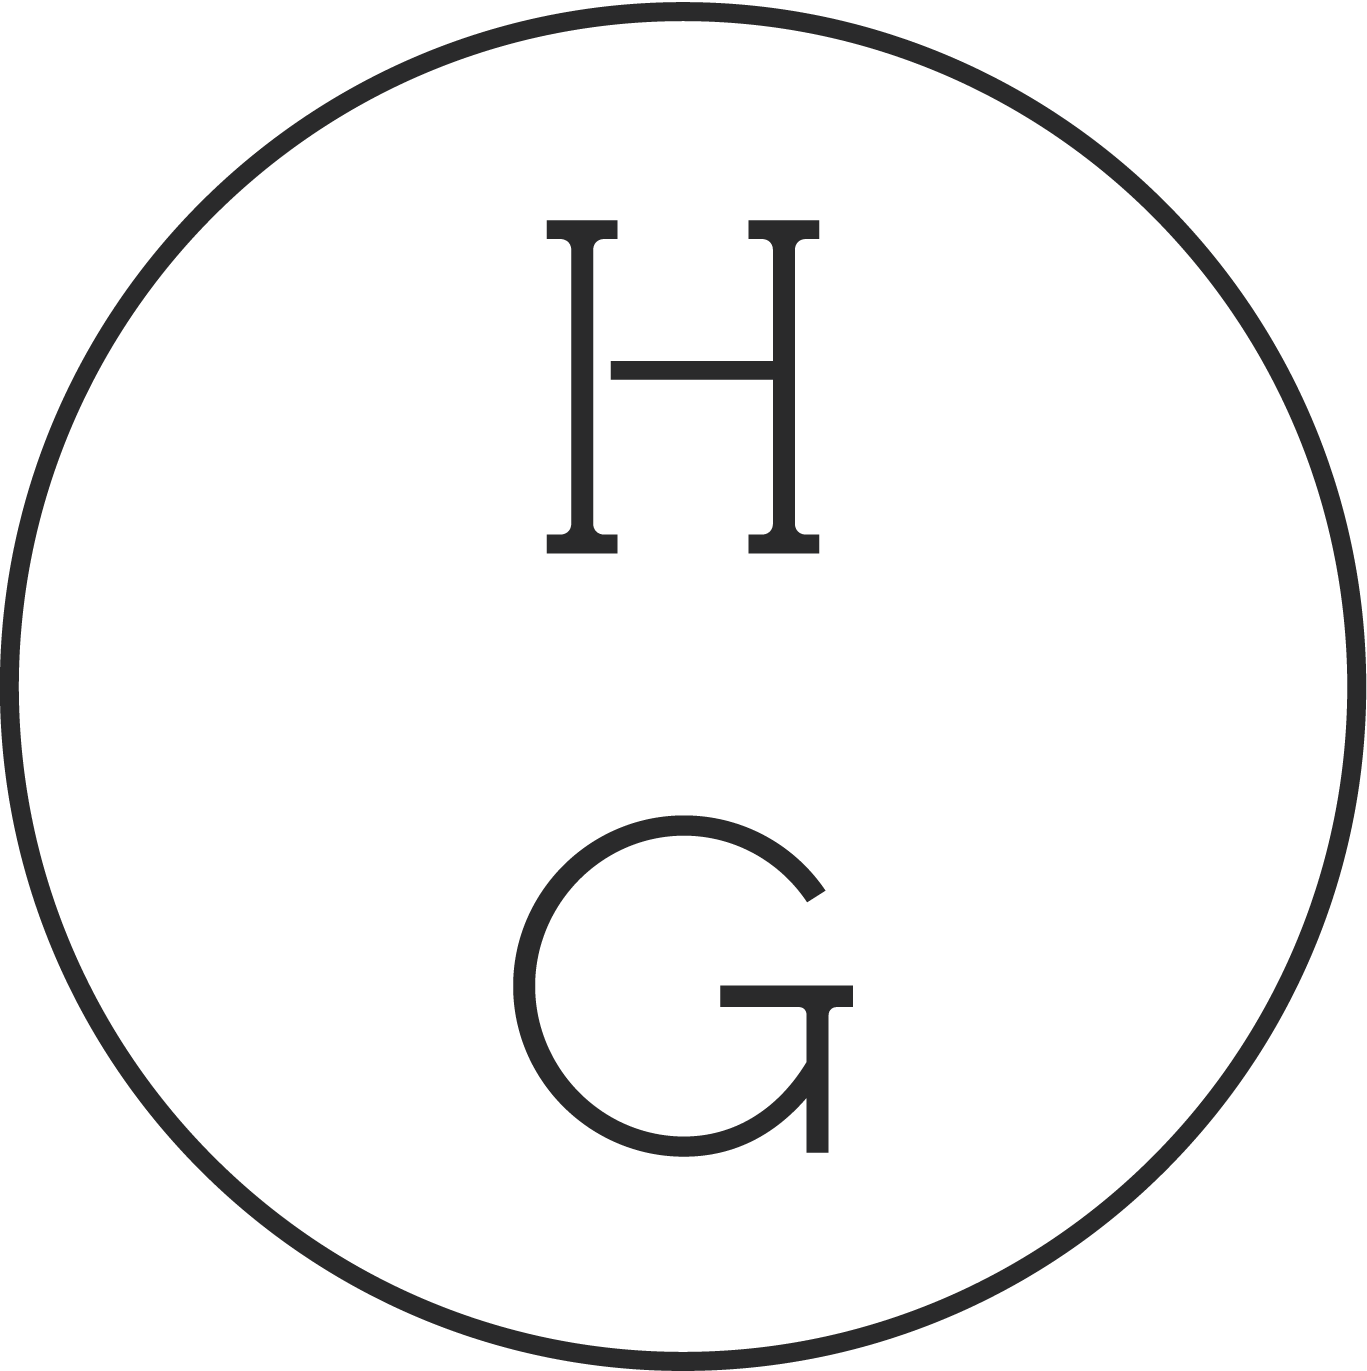 higher ground logo